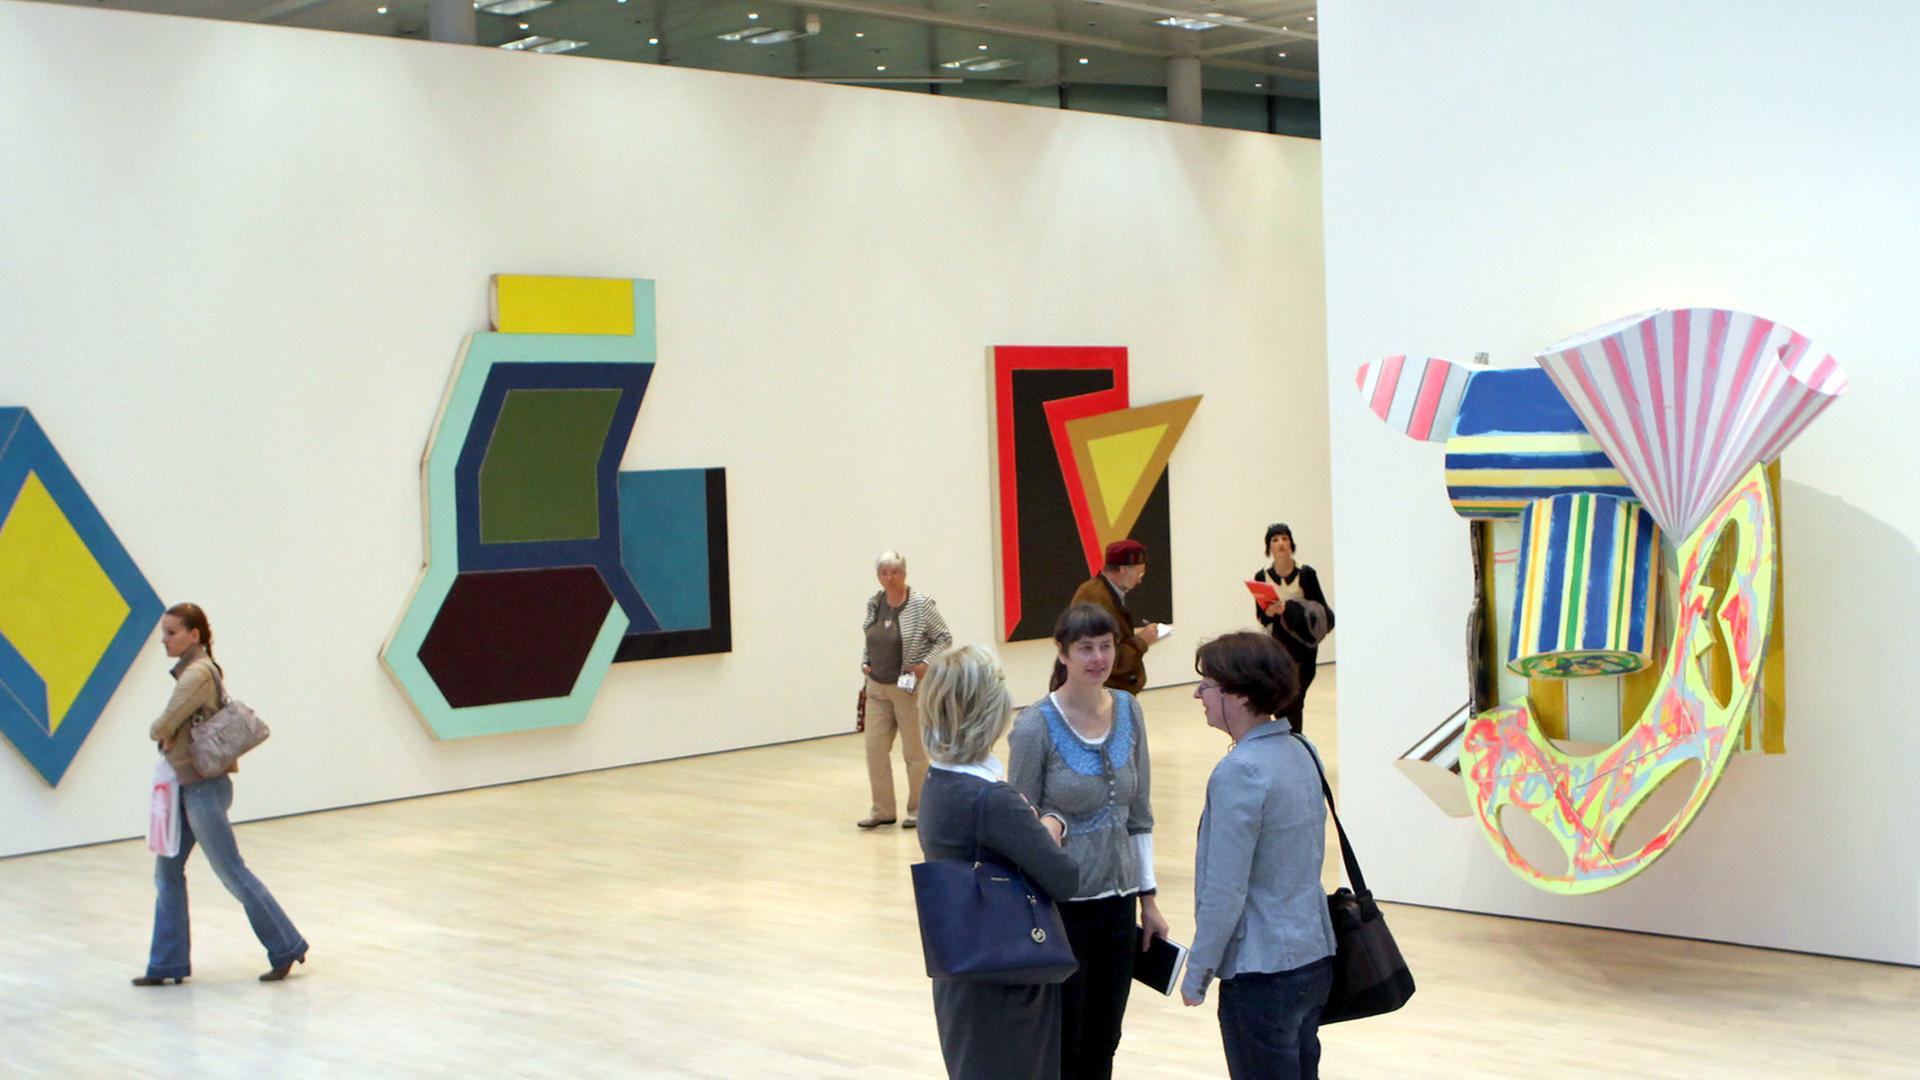 Blick in die Frank-Stella-Retrospektive, die von September 2012 bis Januar 2013 im Kunstmuseum Wolfsburg zu sehen war.